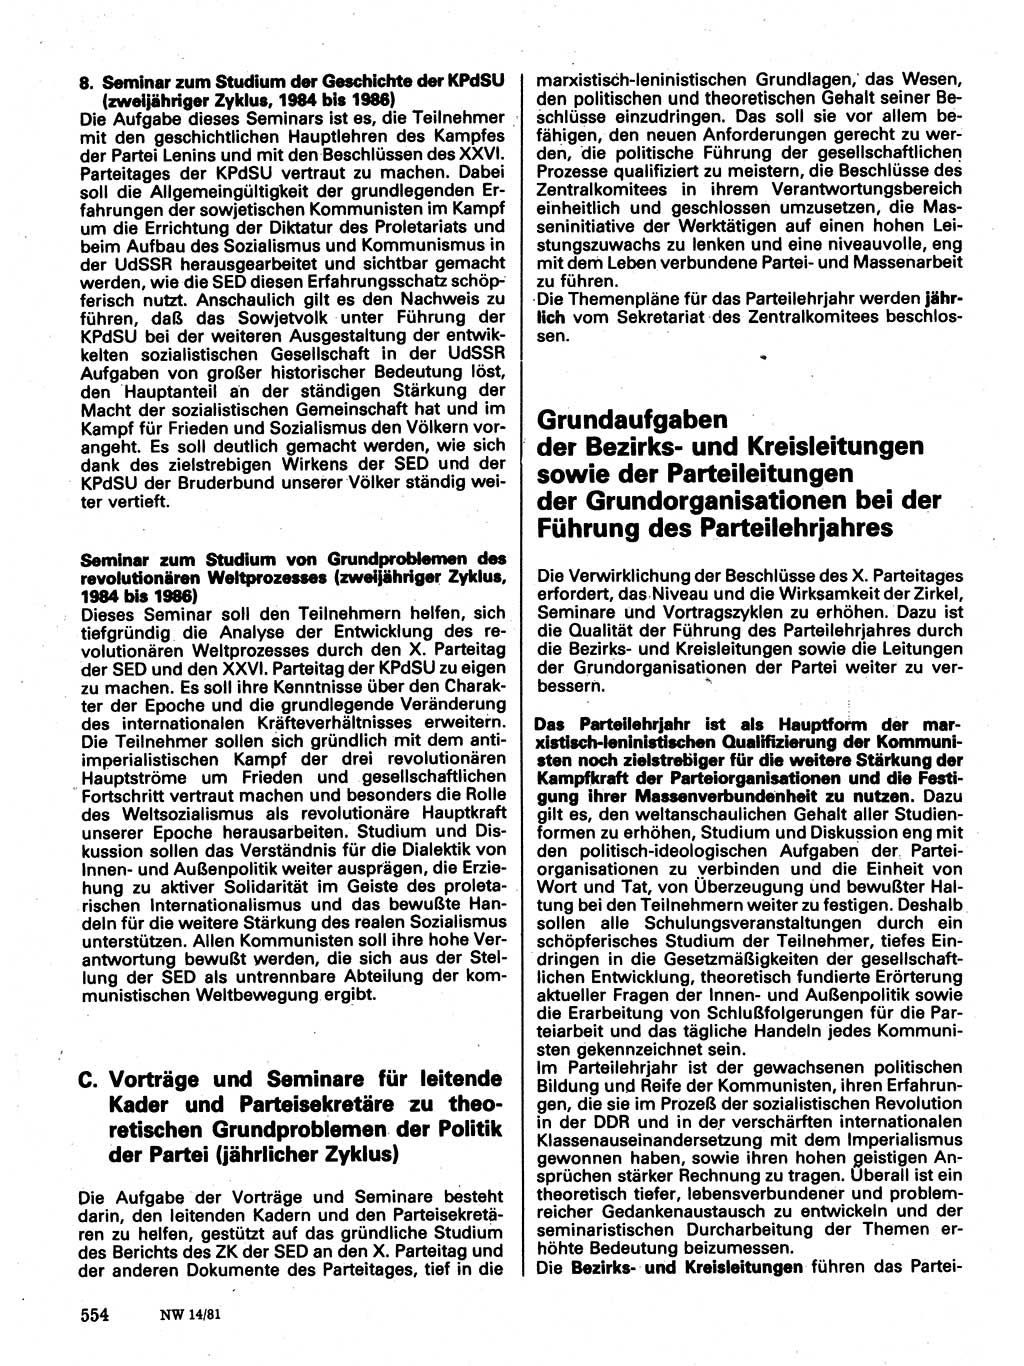 Neuer Weg (NW), Organ des Zentralkomitees (ZK) der SED (Sozialistische Einheitspartei Deutschlands) für Fragen des Parteilebens, 36. Jahrgang [Deutsche Demokratische Republik (DDR)] 1981, Seite 554 (NW ZK SED DDR 1981, S. 554)